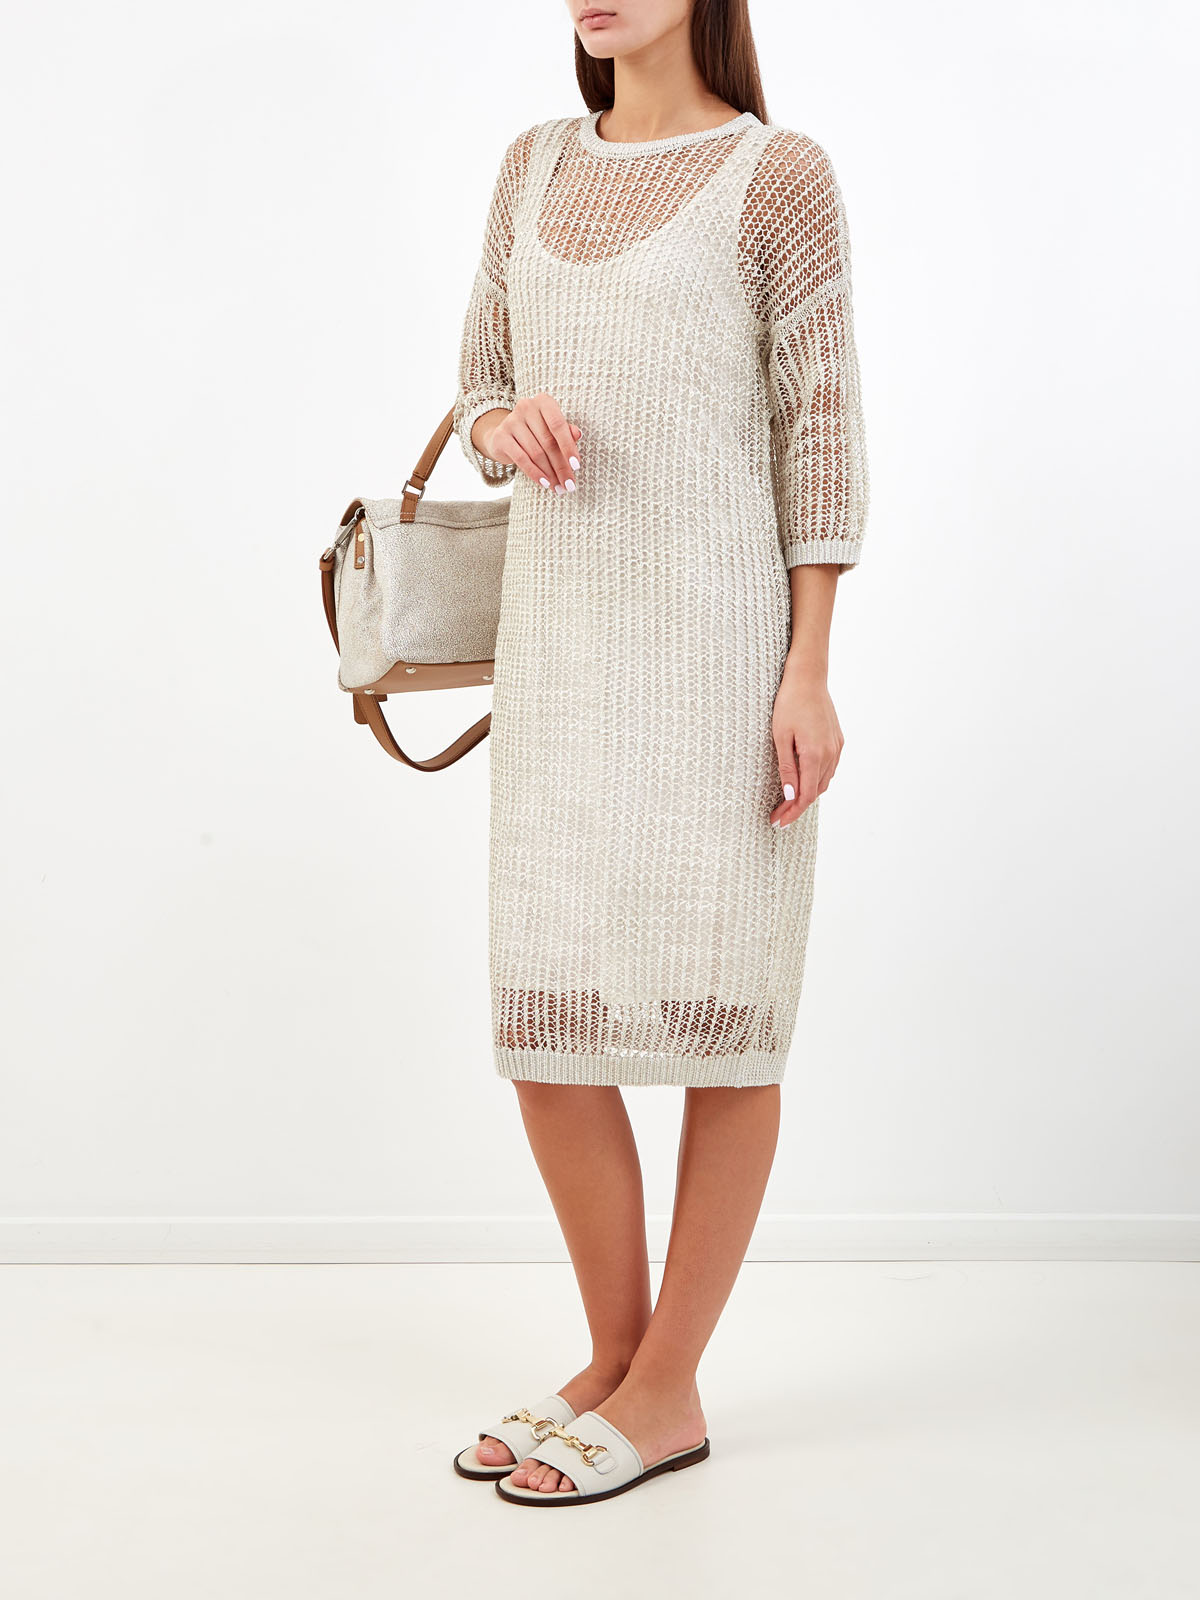 Льняное платье крупной вязки с металлизированной нитью ламе PESERICO, цвет бежевый, размер 44;42 - фото 2